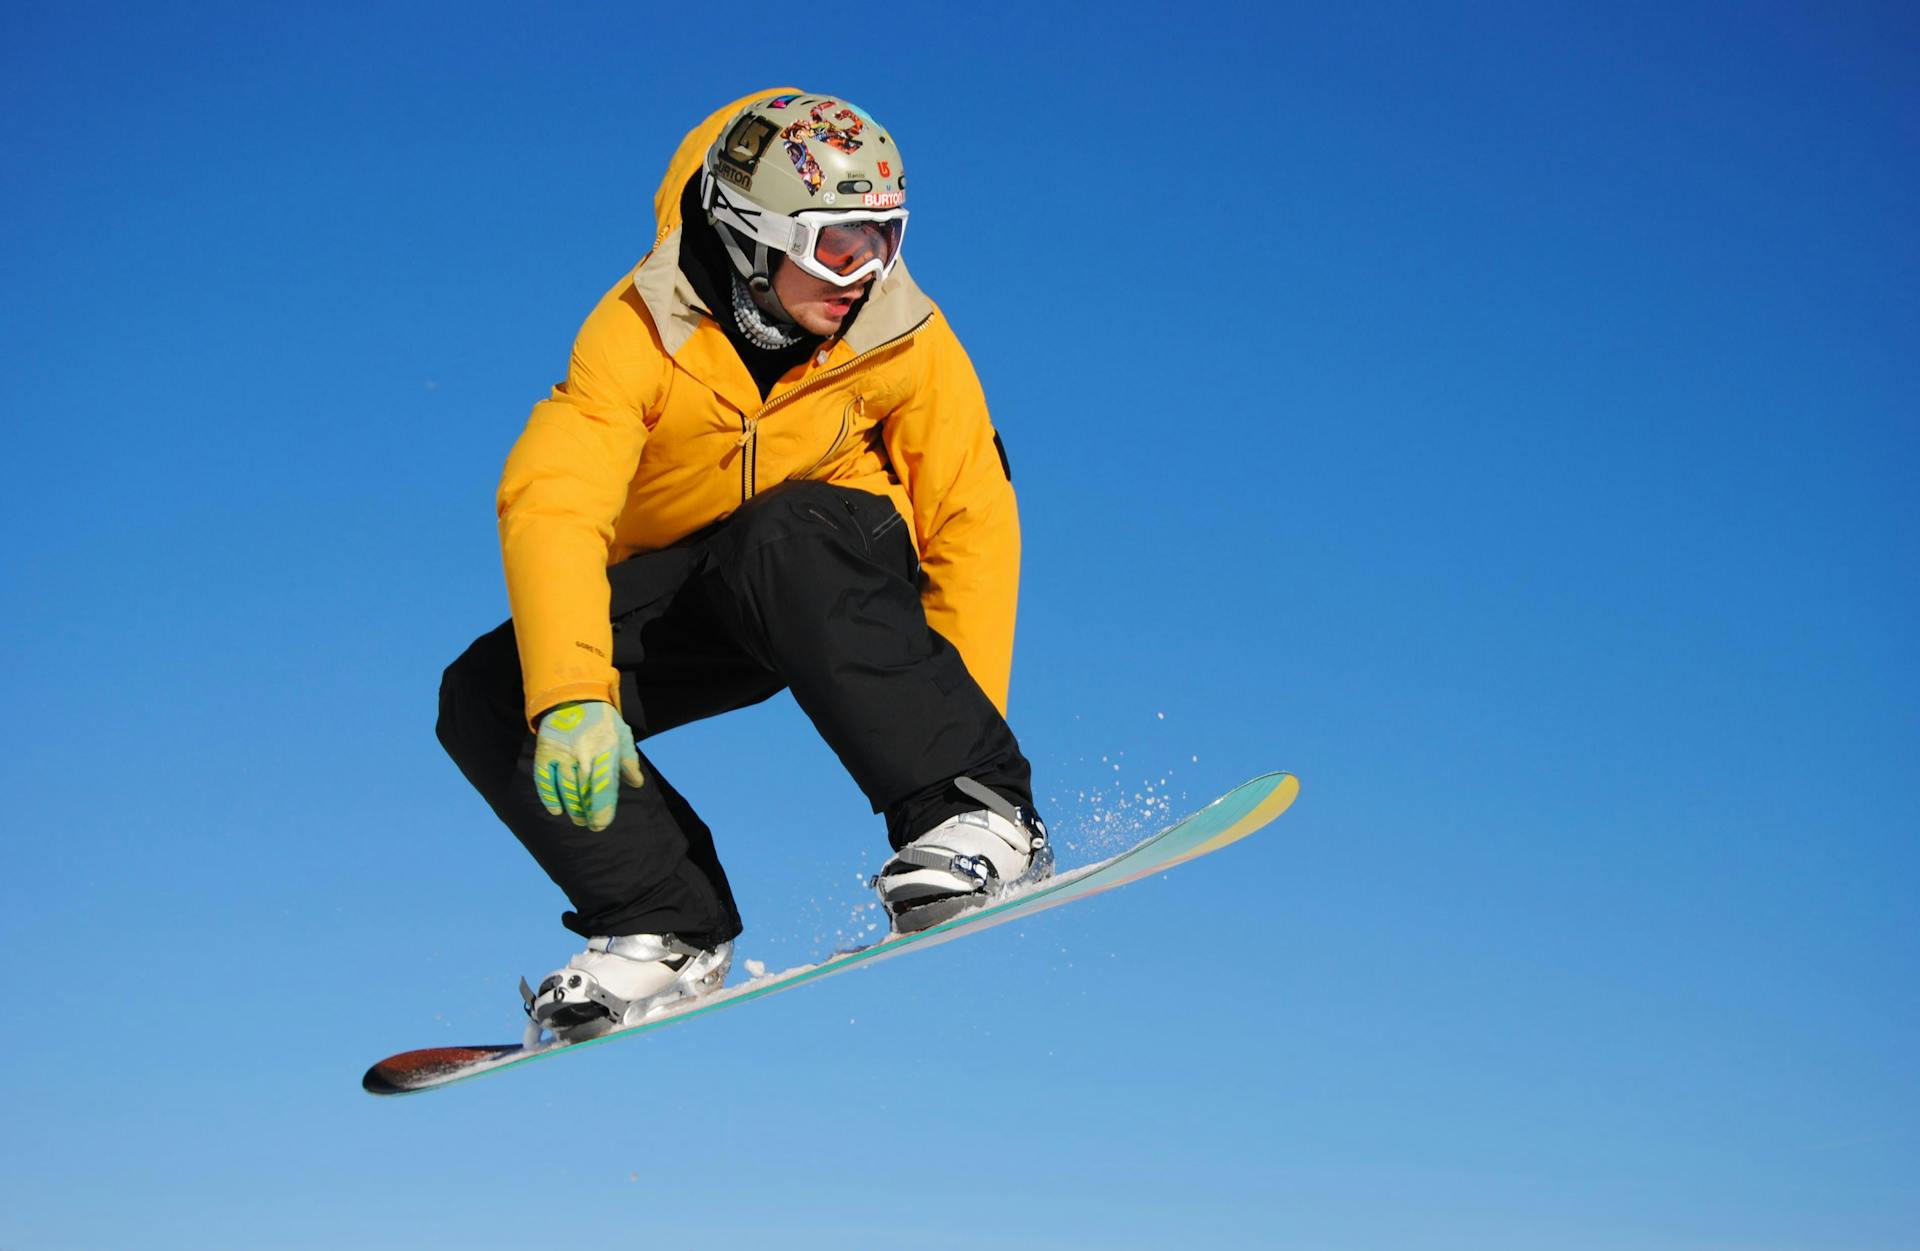 Snowboarder in orange jacket jumping through air at ski resort